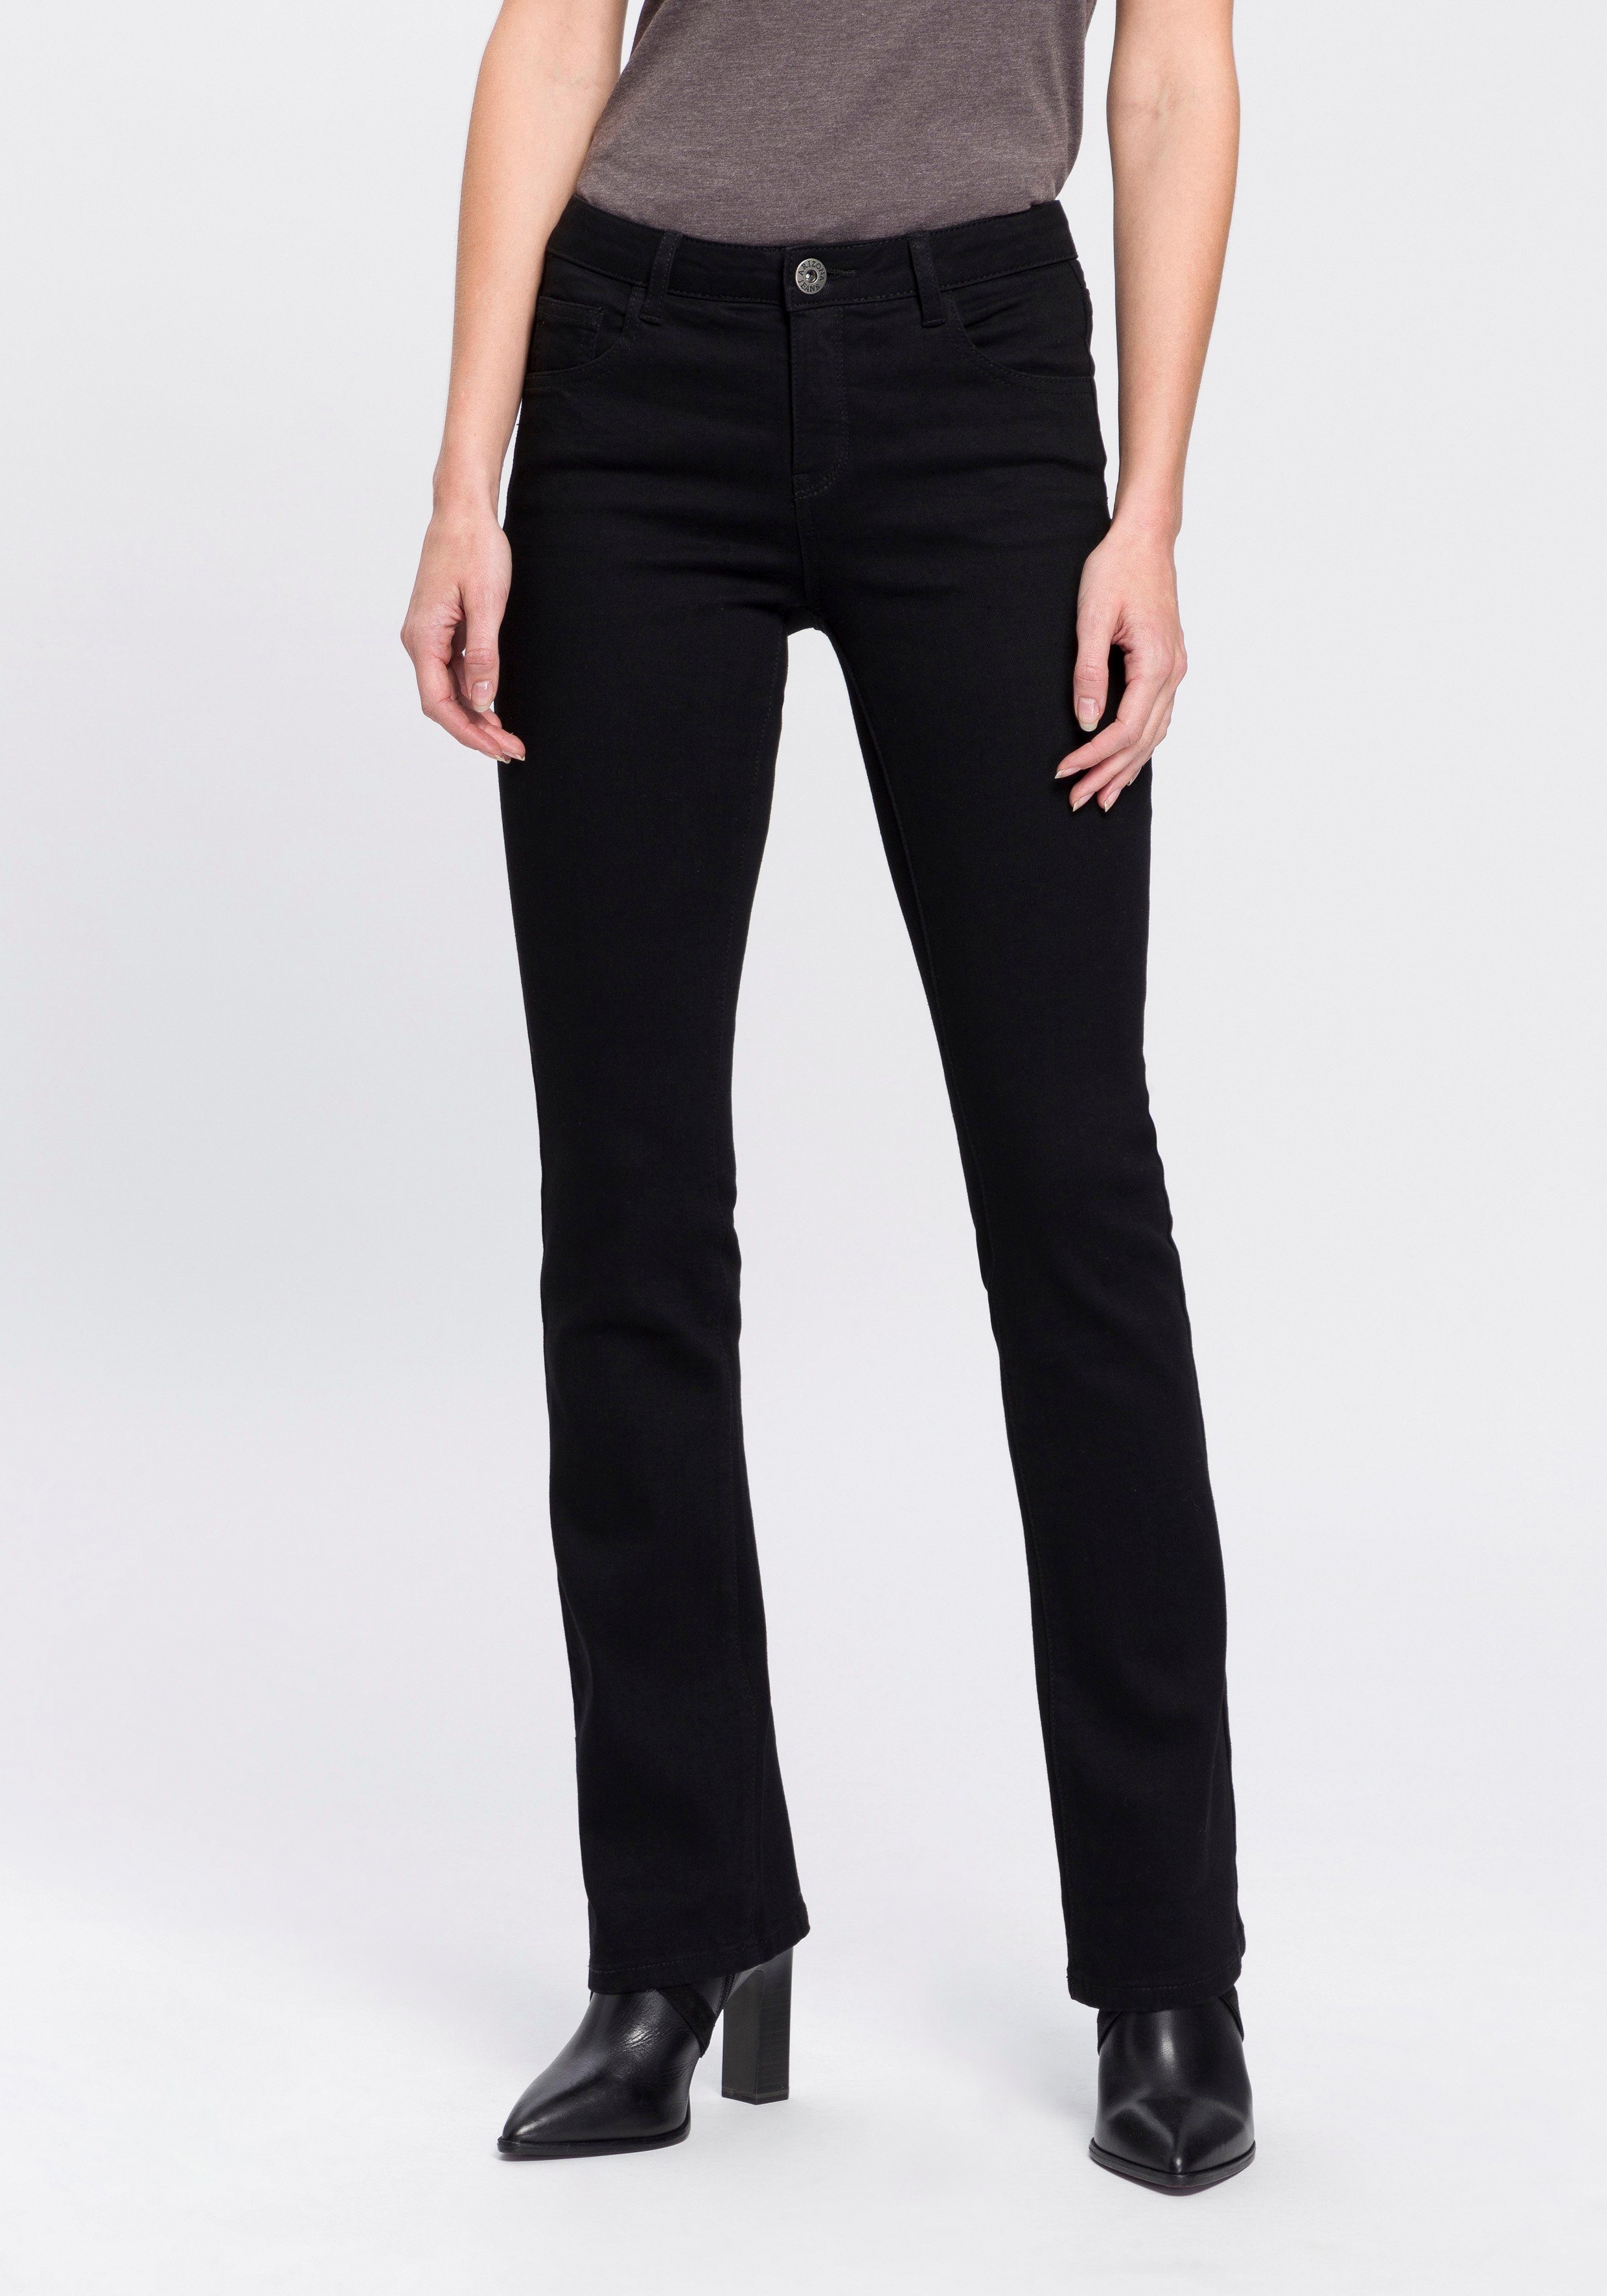 Schwarze Jeans für Damen kaufen » Schwarze Jeanshosen | OTTO